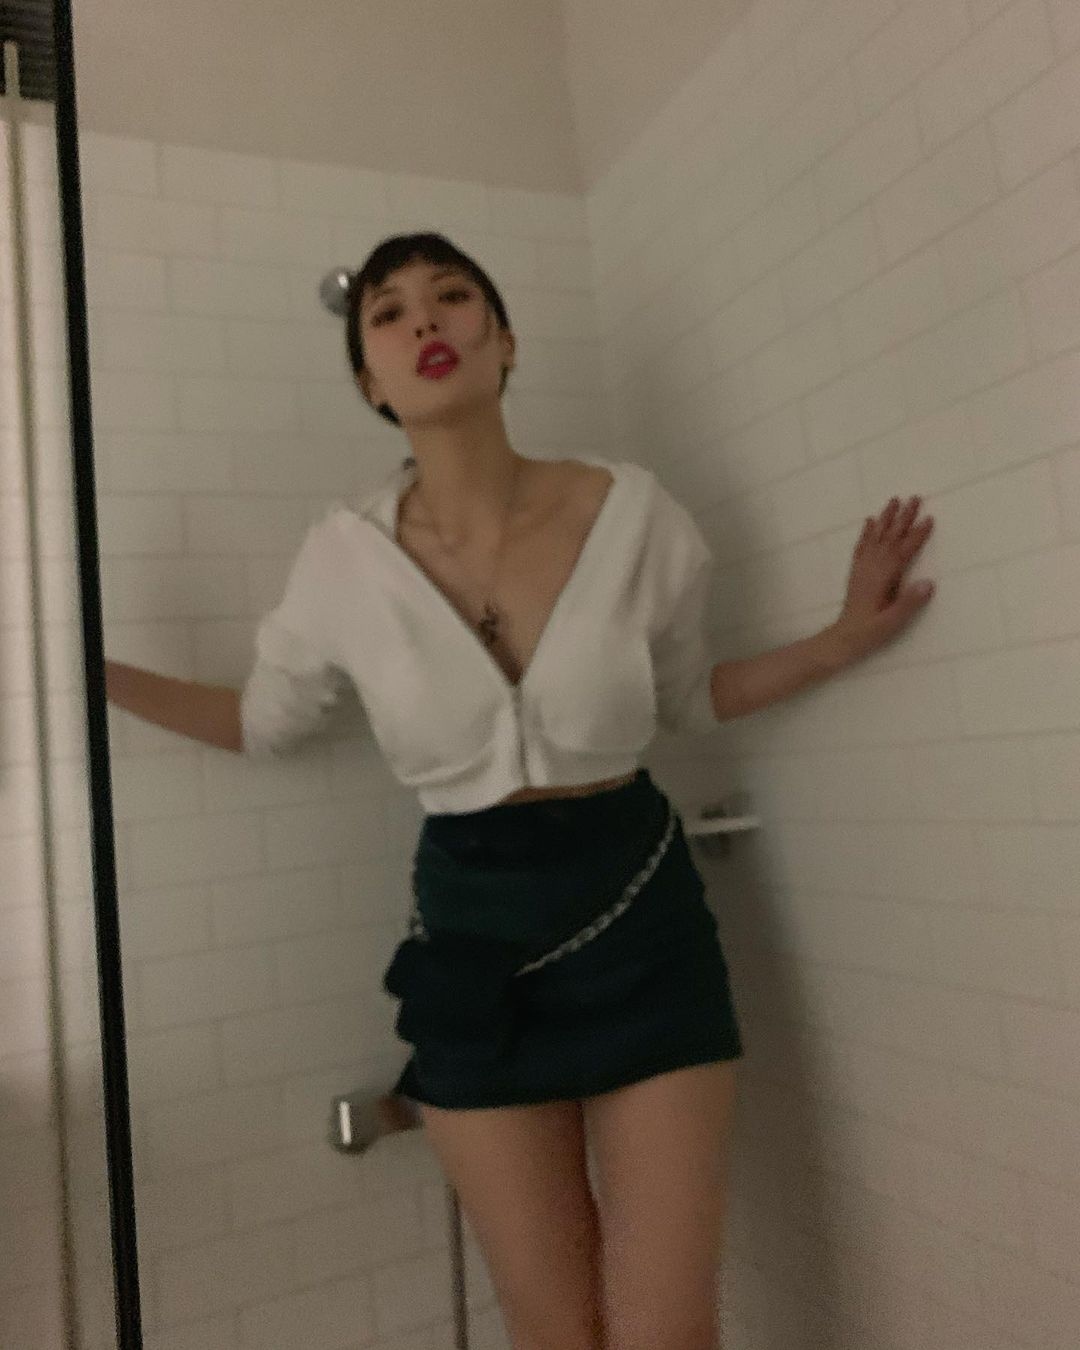 金泫雅在淋浴室摆性感造型 公开大胆露出胸口的照片